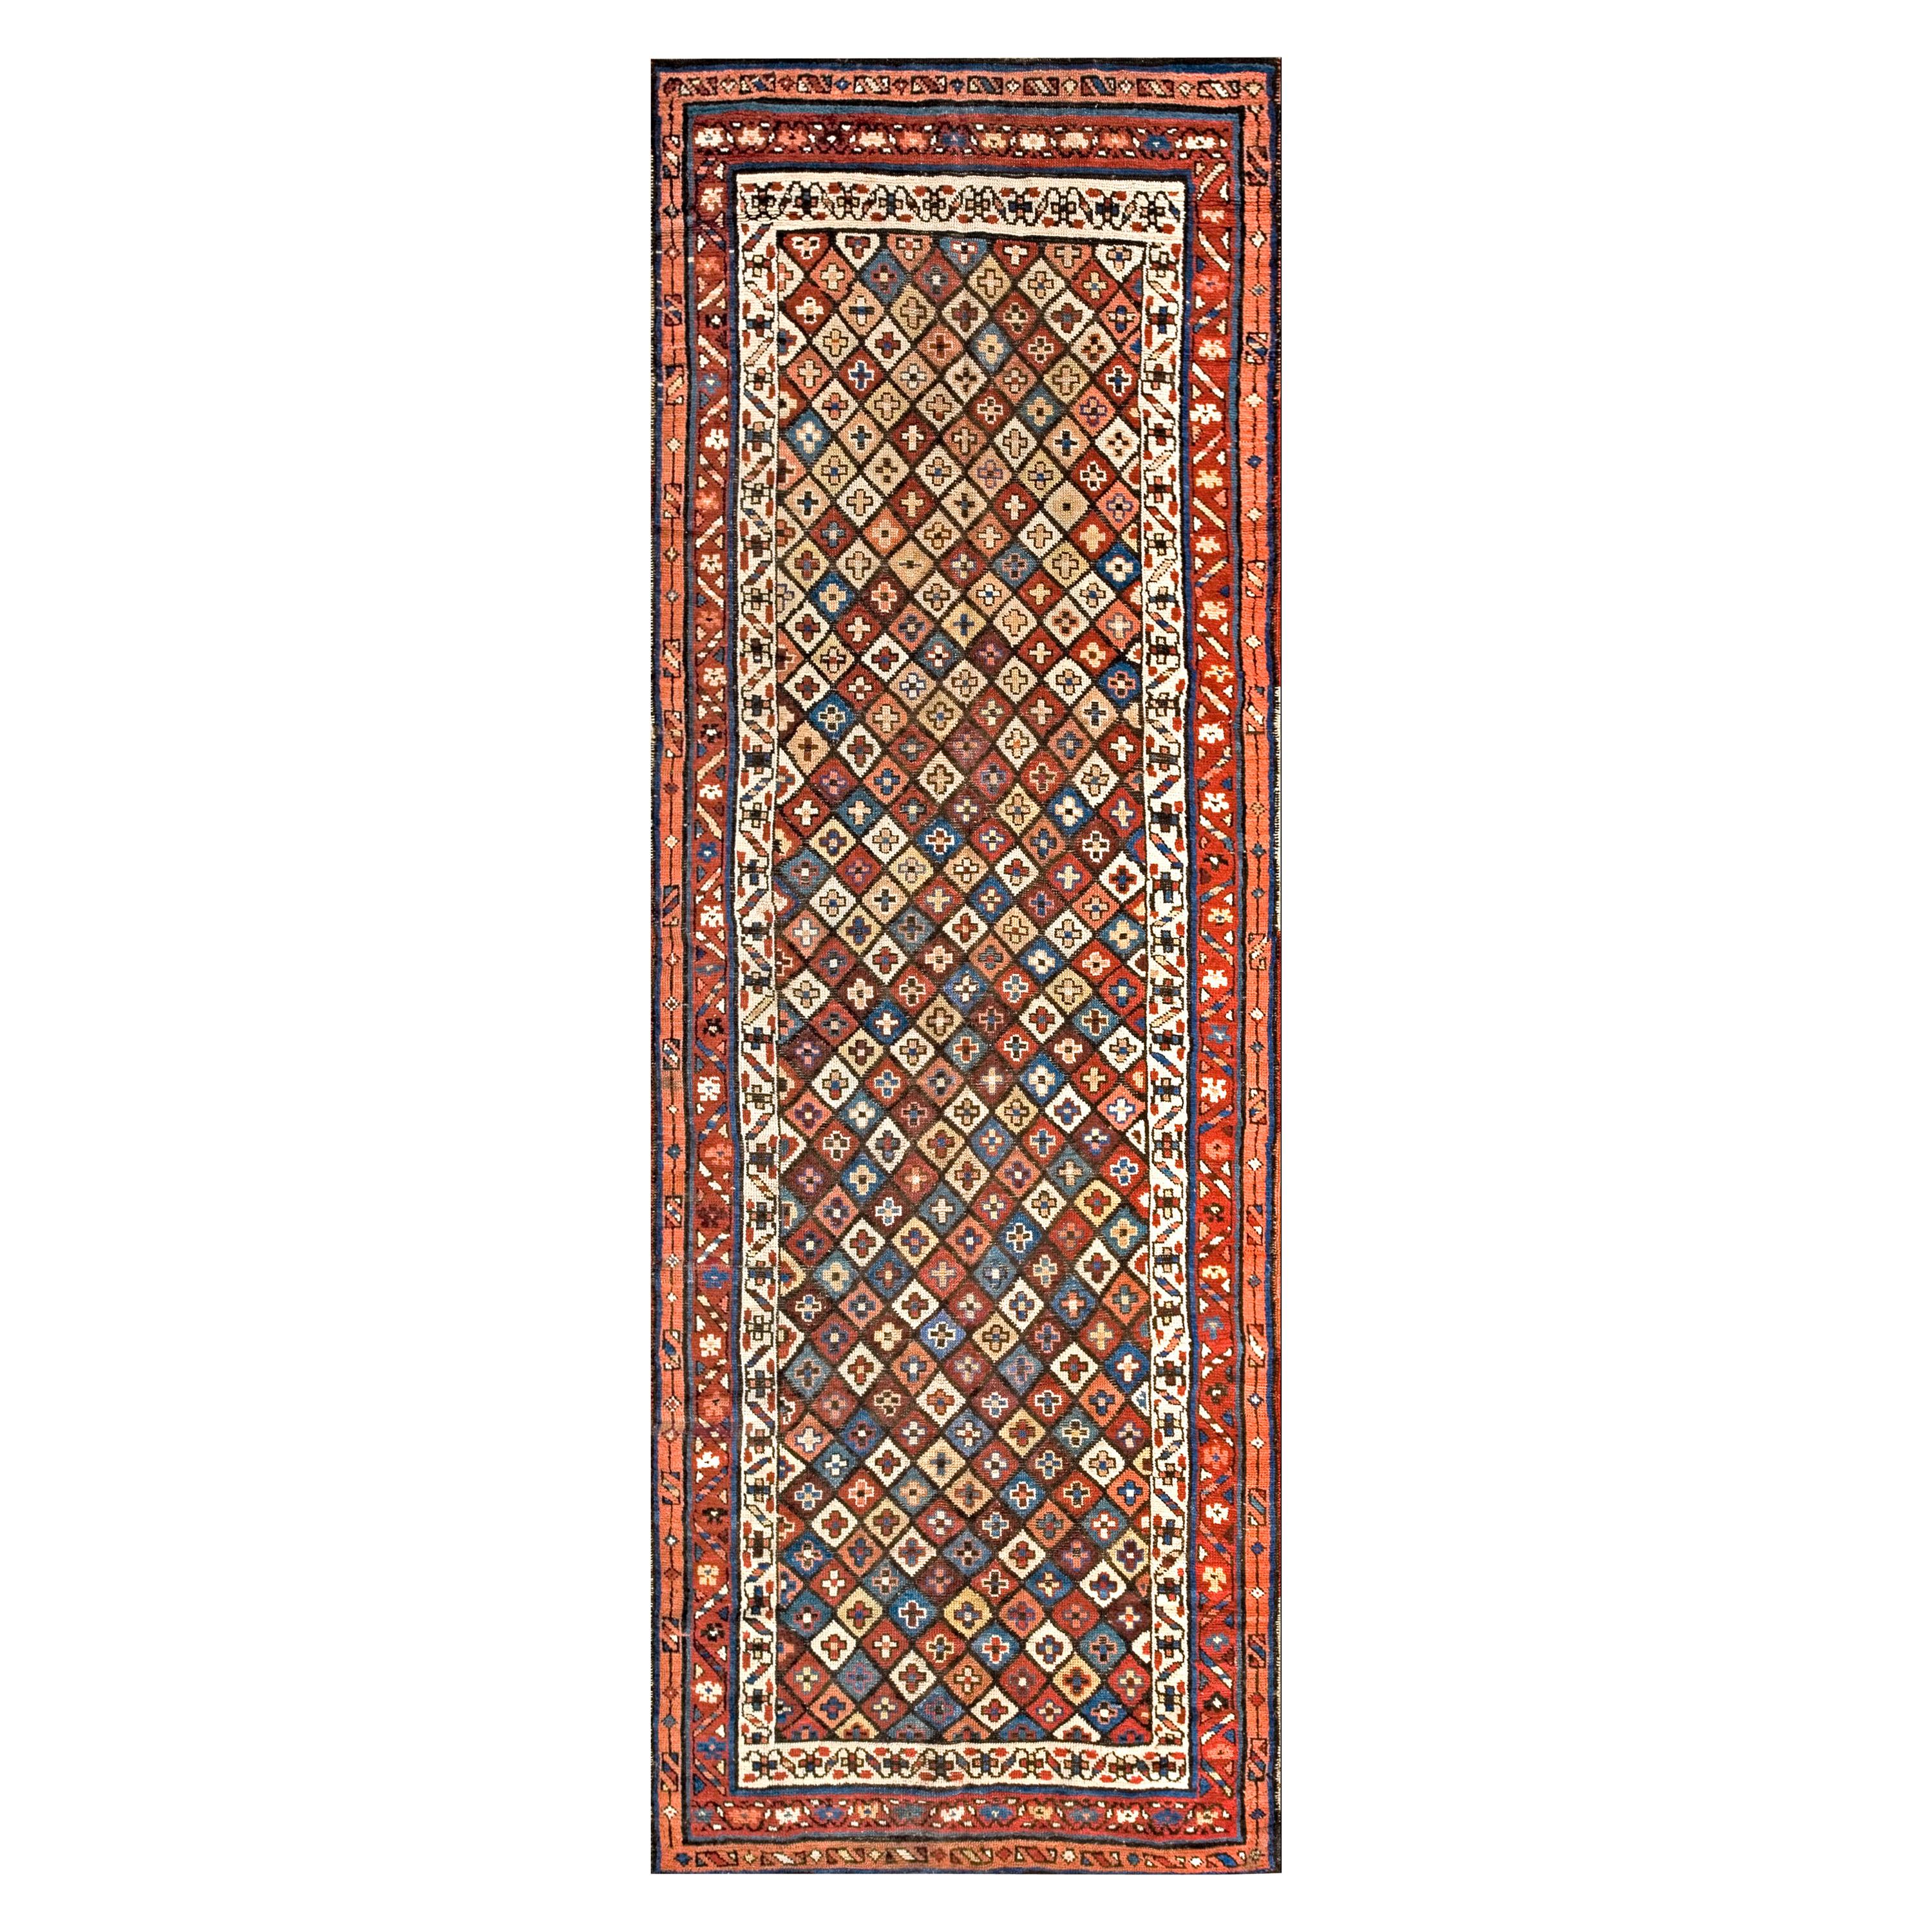 Persischer Kurdischer Teppich des späten 19. Jahrhunderts ( 3'6" x 10' - 107 x 305)